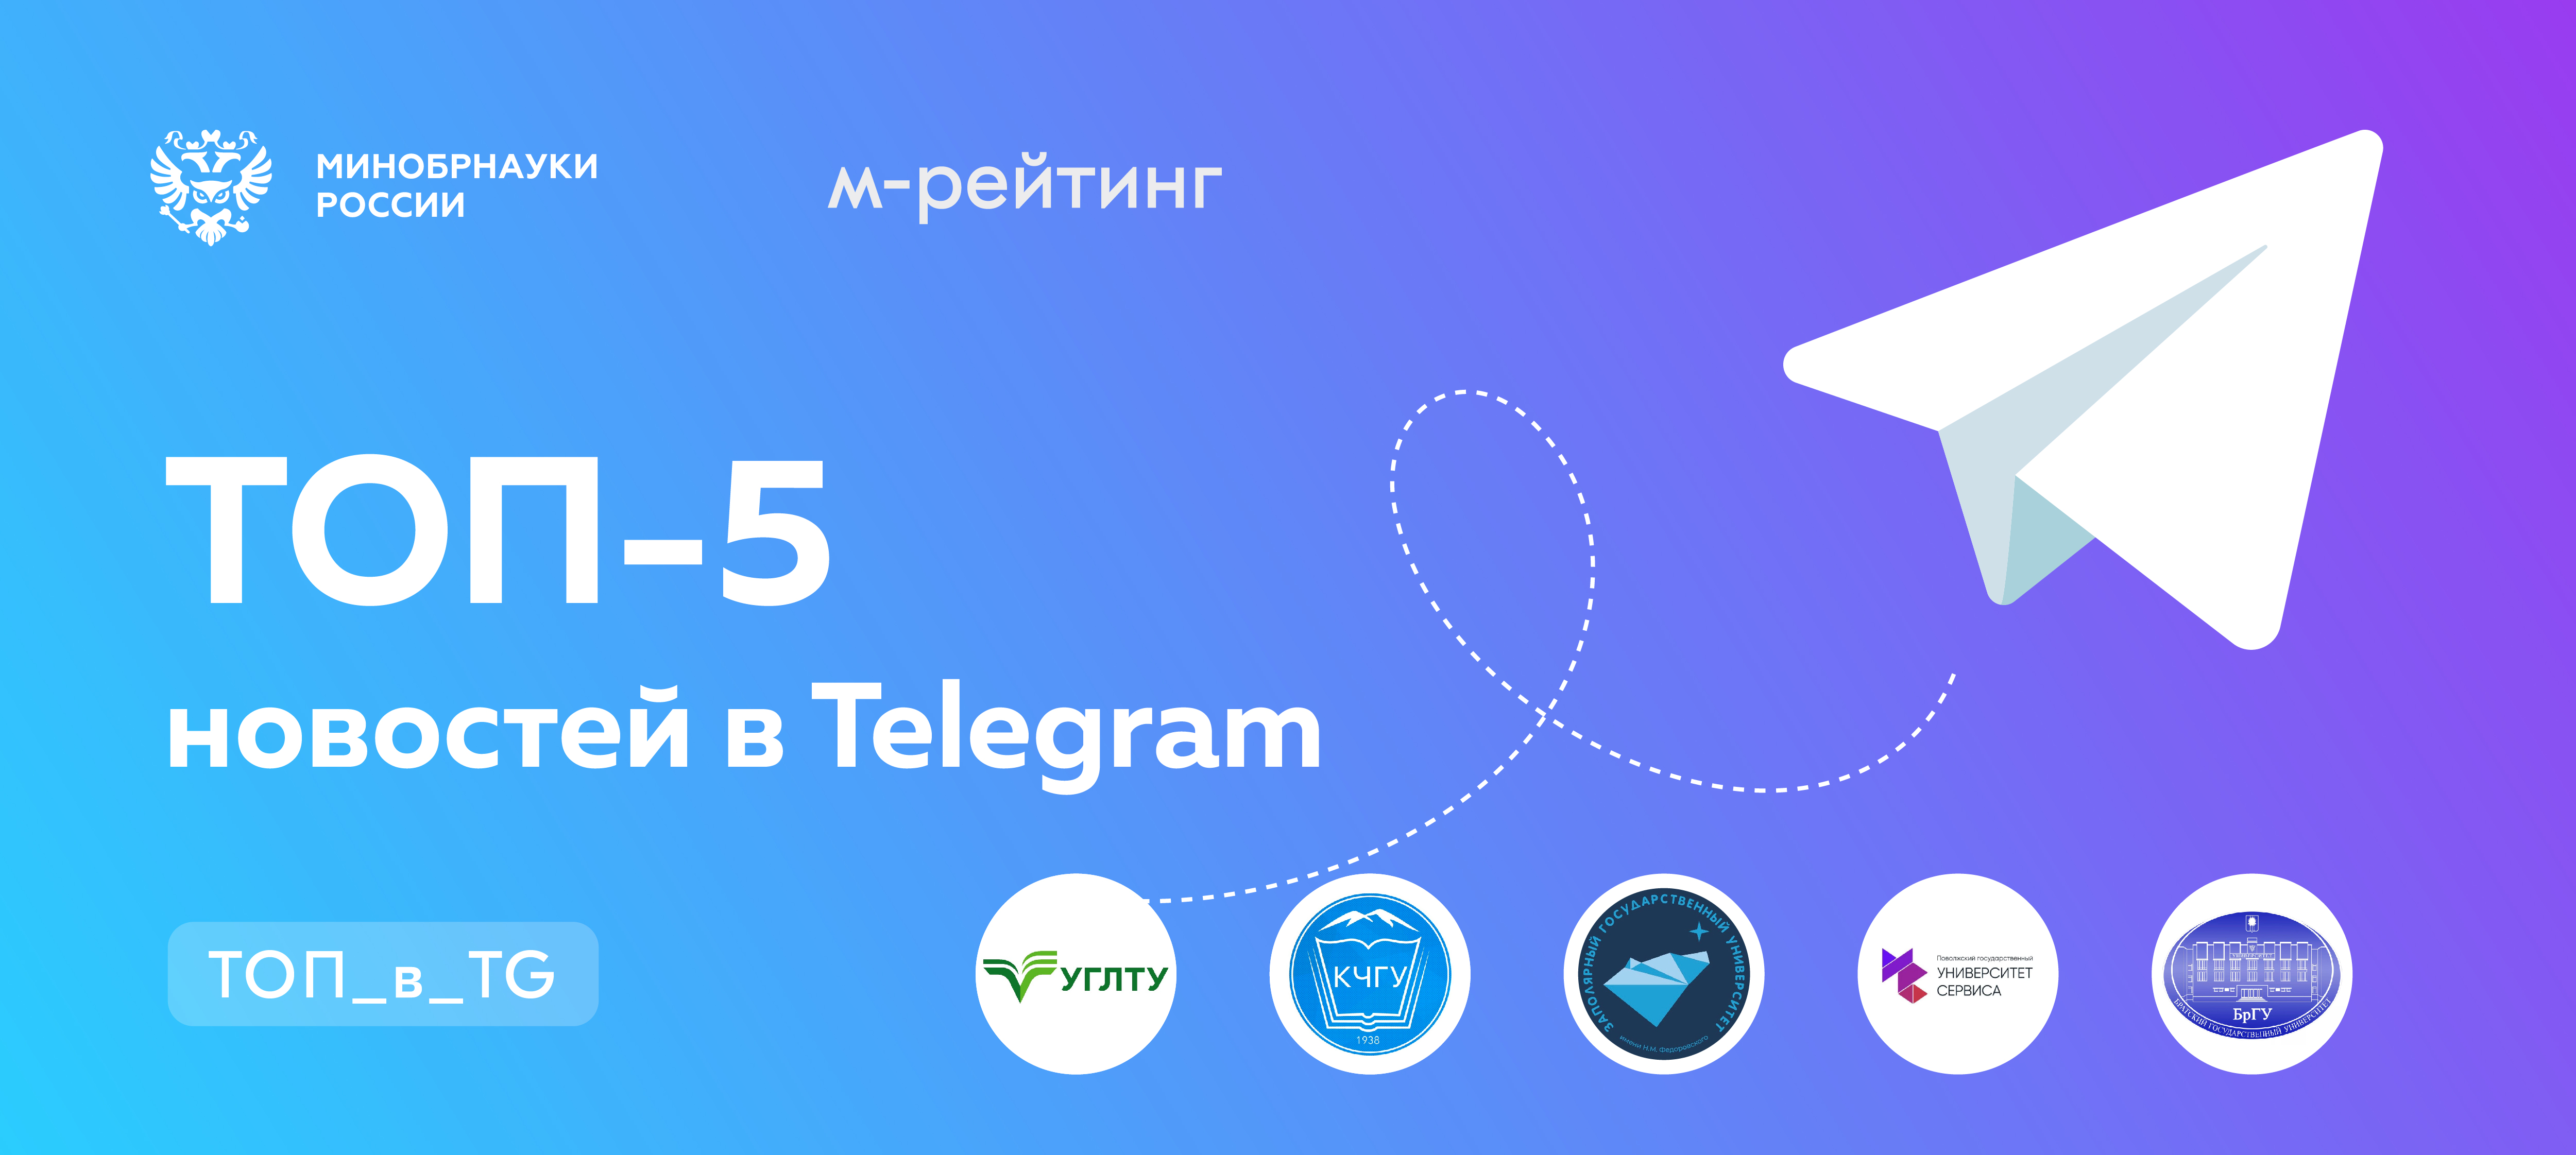 Телеграмм официальный сайт регистрация на телефон бесплатно на русском языке фото 36